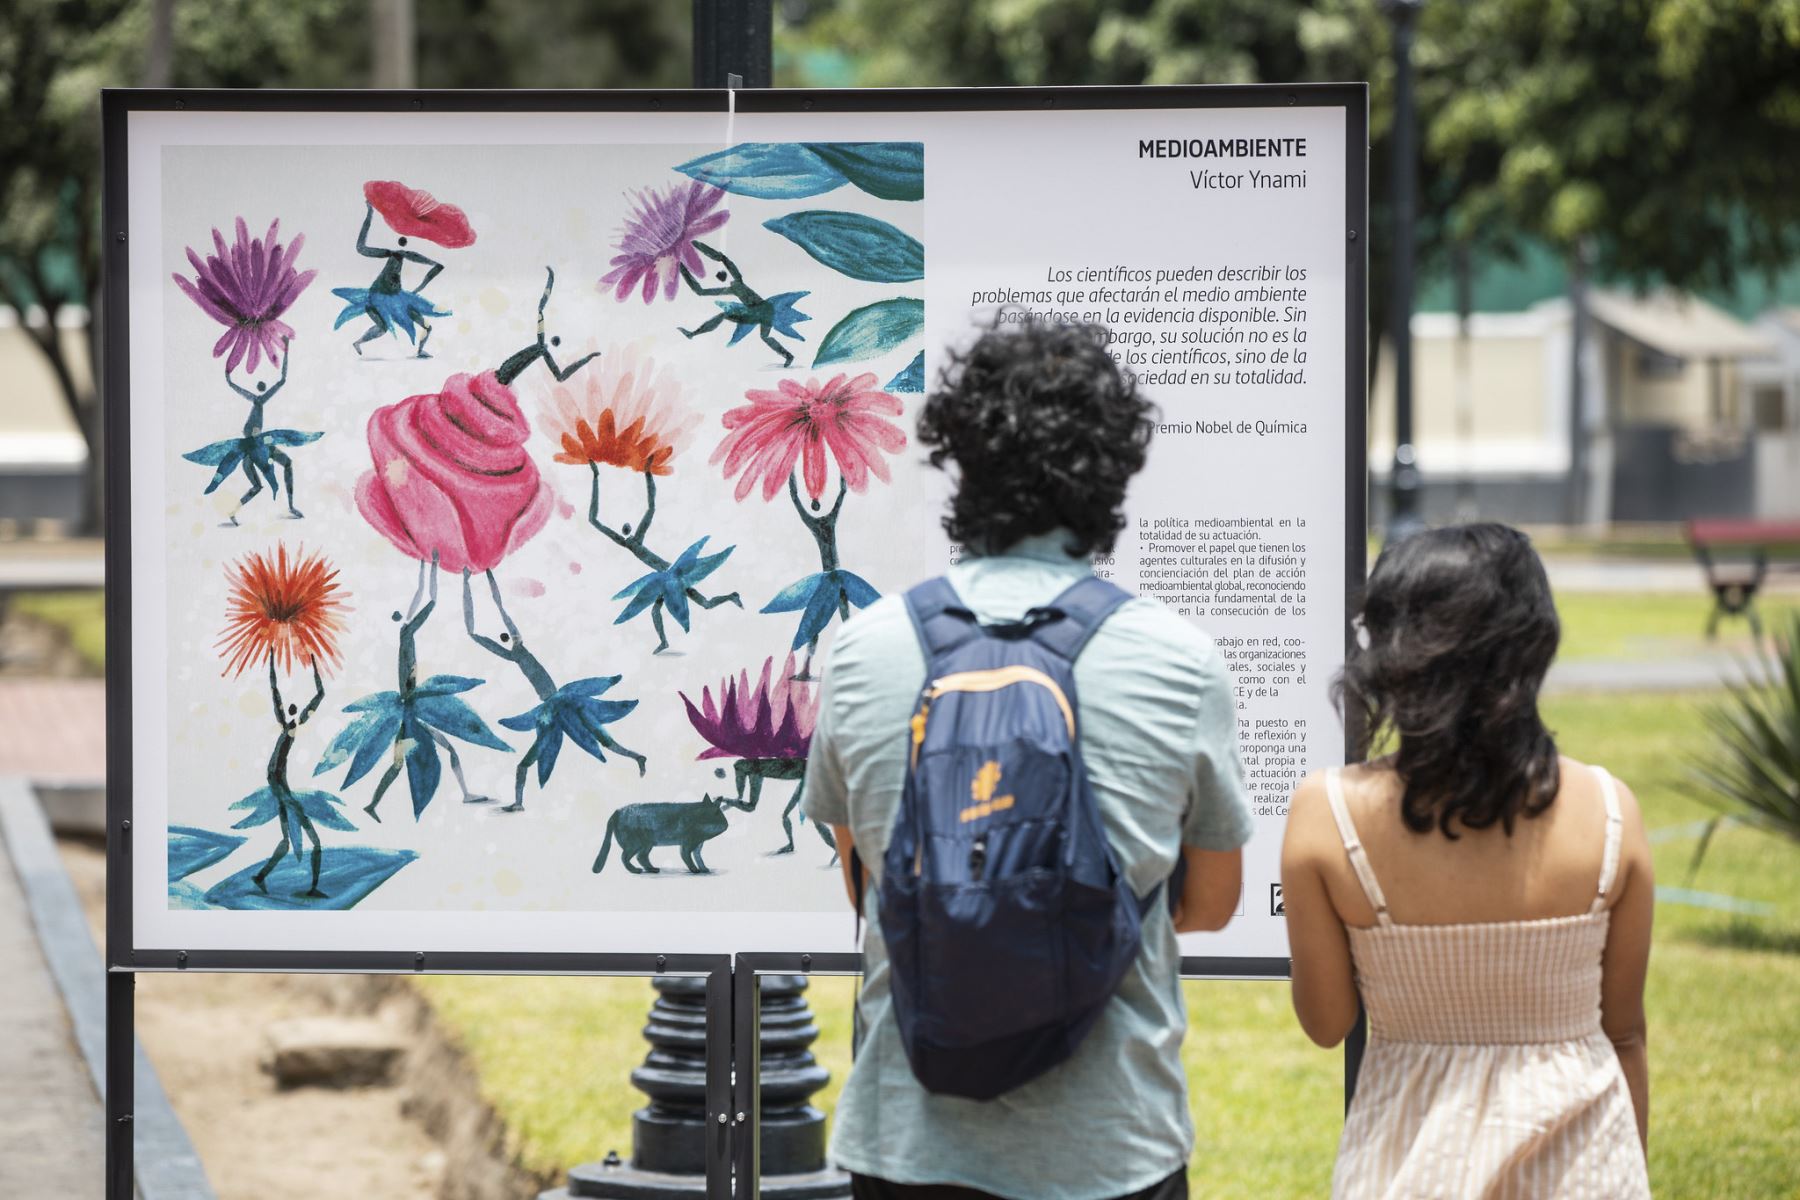 Los ciudadanos podrán visitar la exhibición hasta el 31 de marzo en el parque Washington del Cercado de Lima (cruce del Jr. Natalio Sánchez y la Av. Arequipa, a la altura de la cuadra, en Santa Beatriz). ANDINA/ Municipalidad de Lima